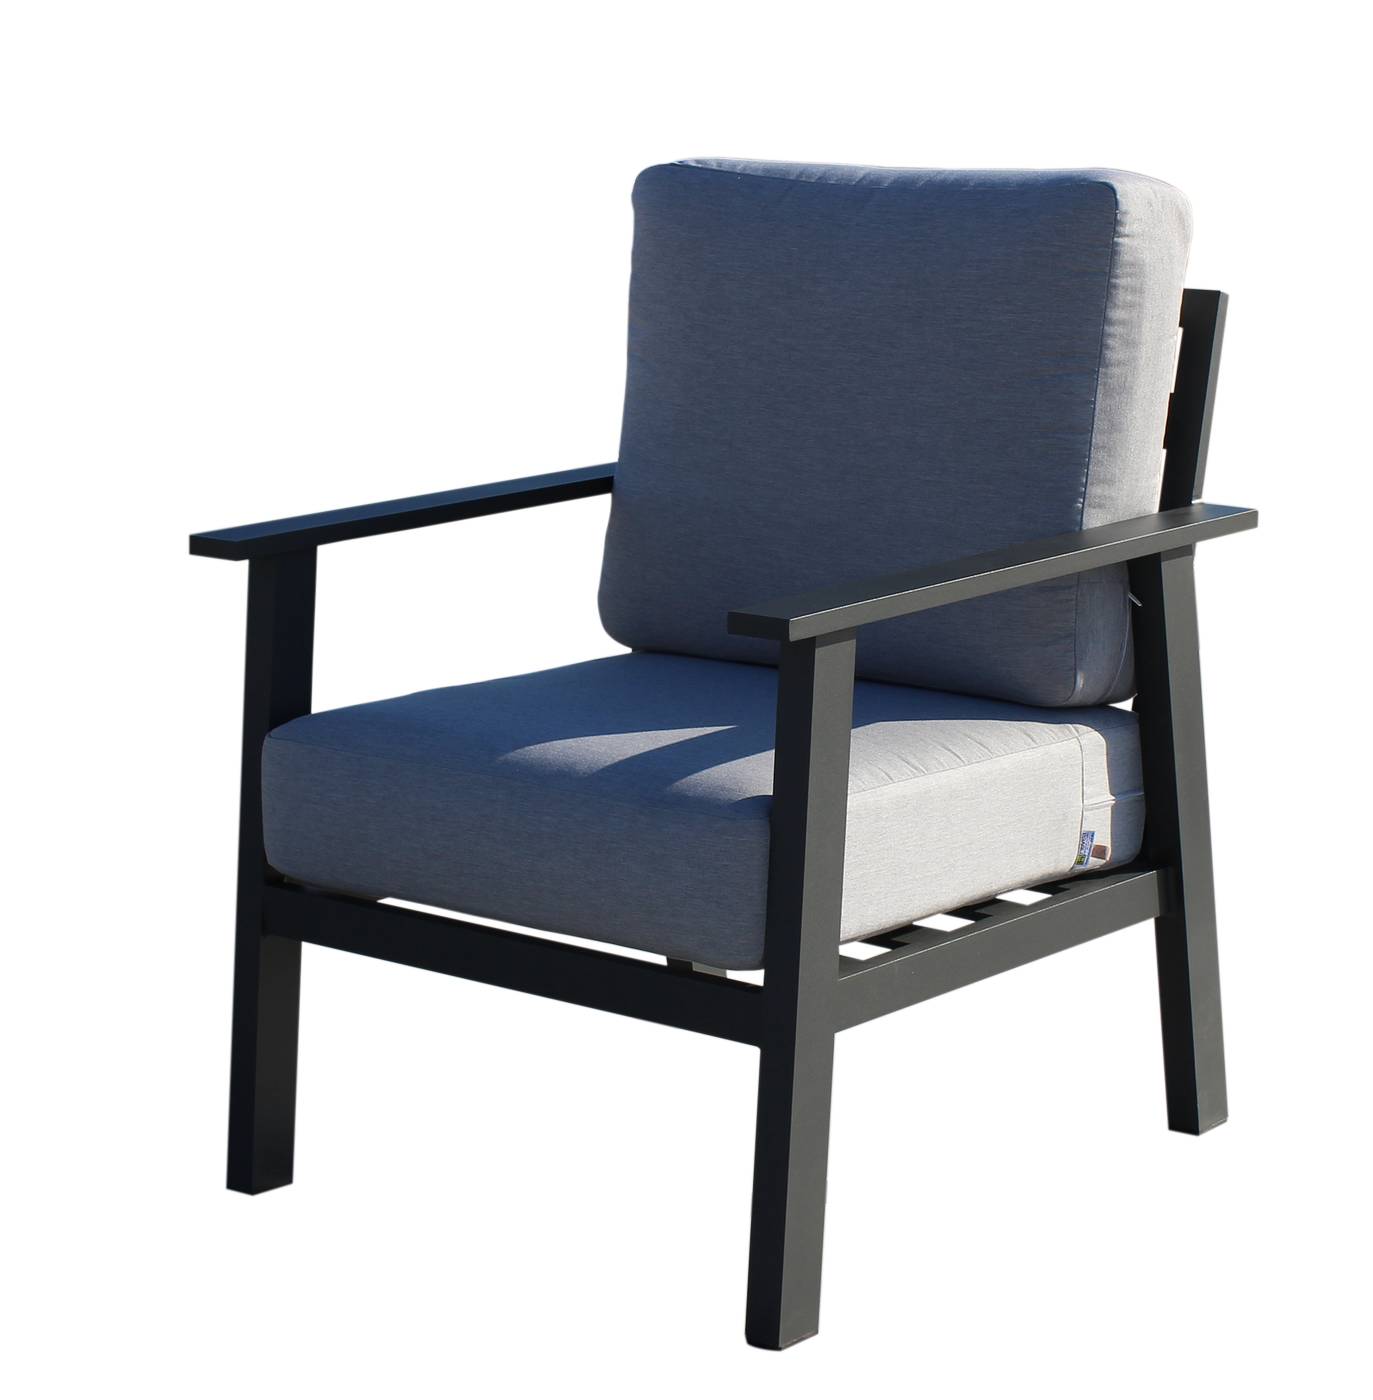 Set Aluminio Eliot-7 - Conjunto aluminio: sofá 2 plazas + 2 sillones + mesa de centro. Fabricado de aluminio en color blanco, antracita, champagne, plata o marrón.